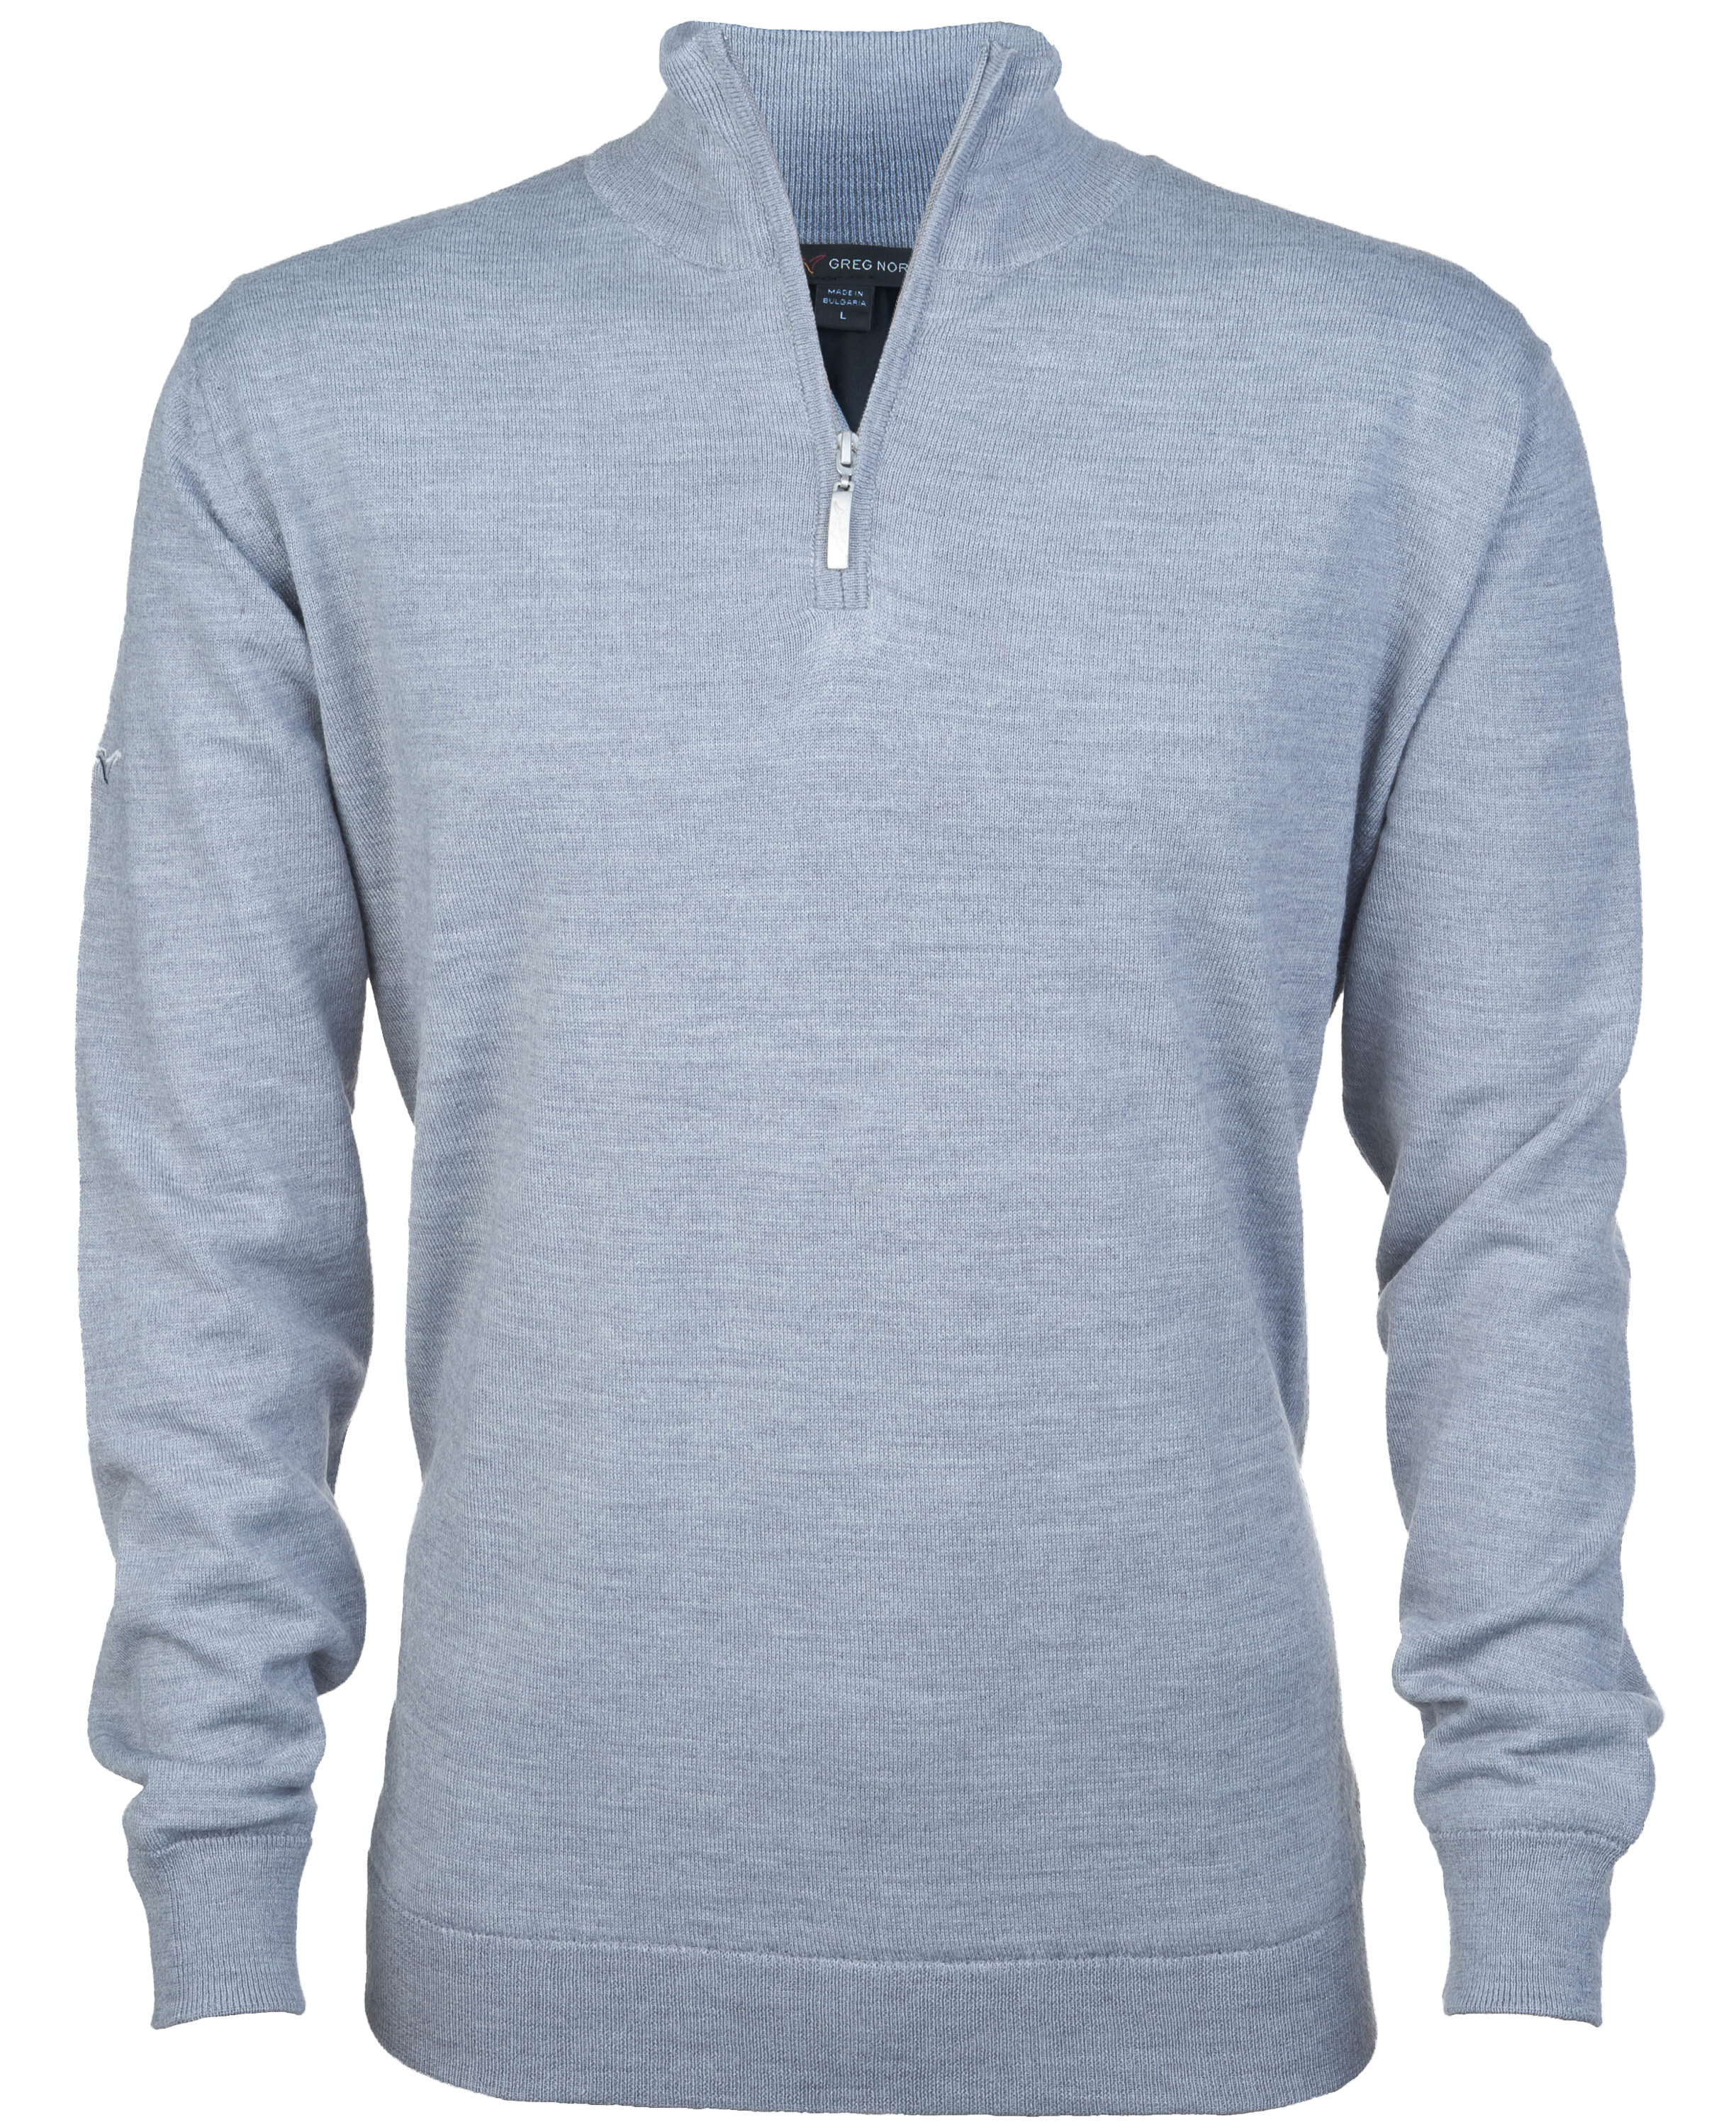 Greg Norman Windbreaker Lined 1/4 Zip Sweater, grey (steel)